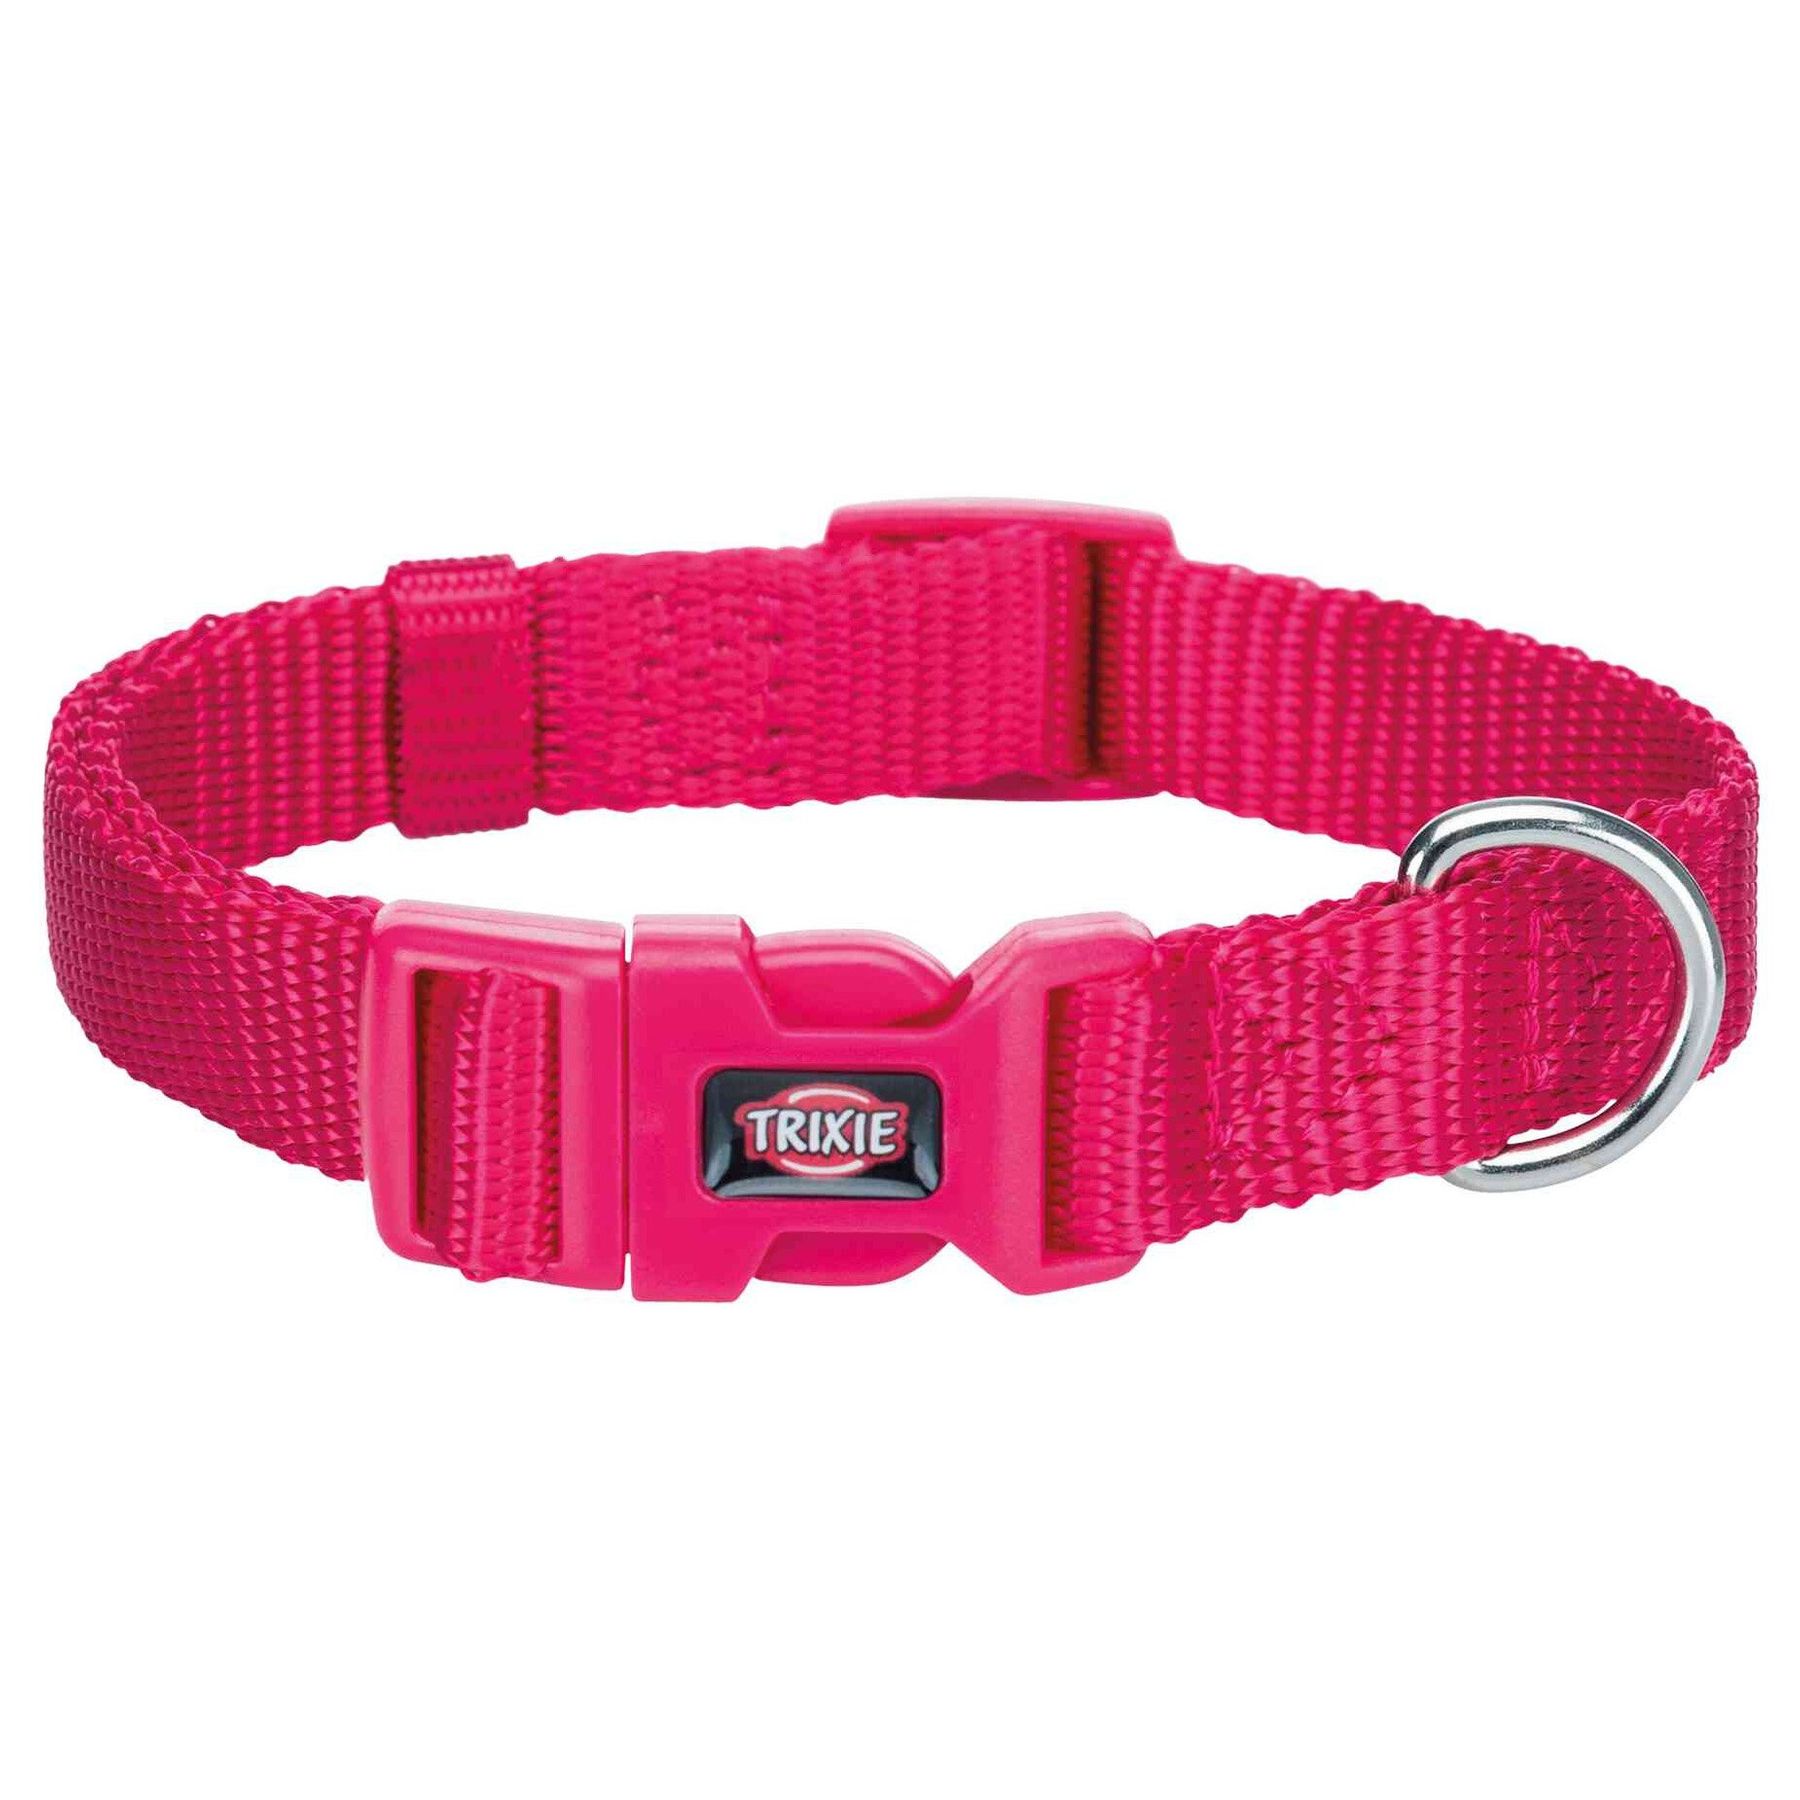 Нейлоновый ошейник для собак Trixie Premium M-L 35-55 см / 20 мм (розовый)